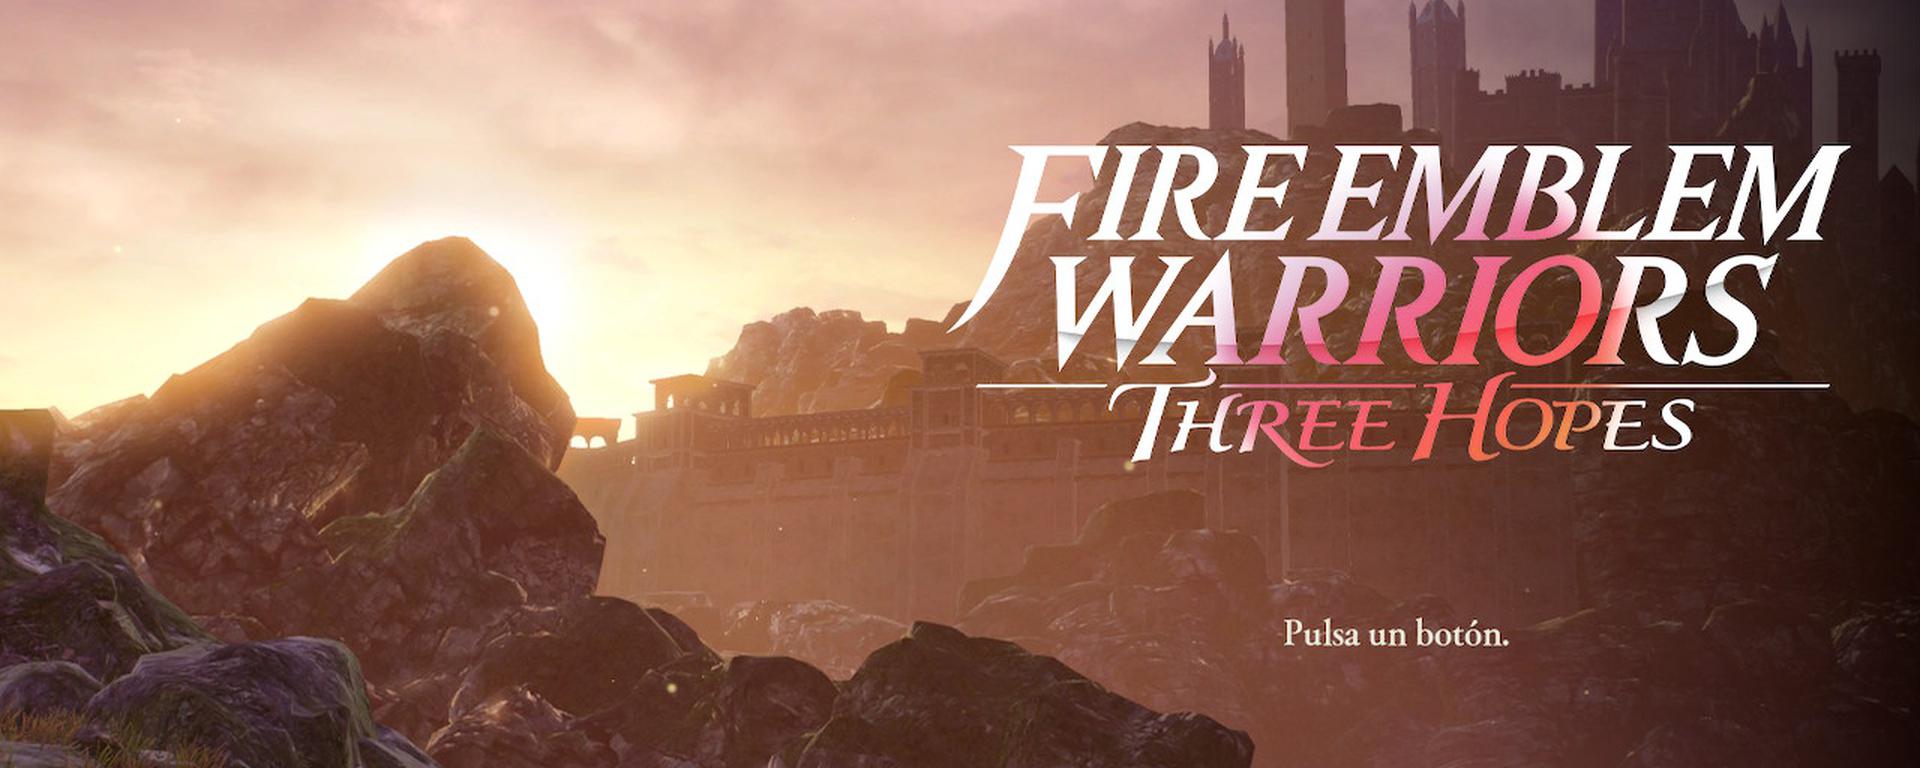 Fire Emblem Warriors Three Hopes [REVIEW]: la combinación perfecta de estrategia y aventura